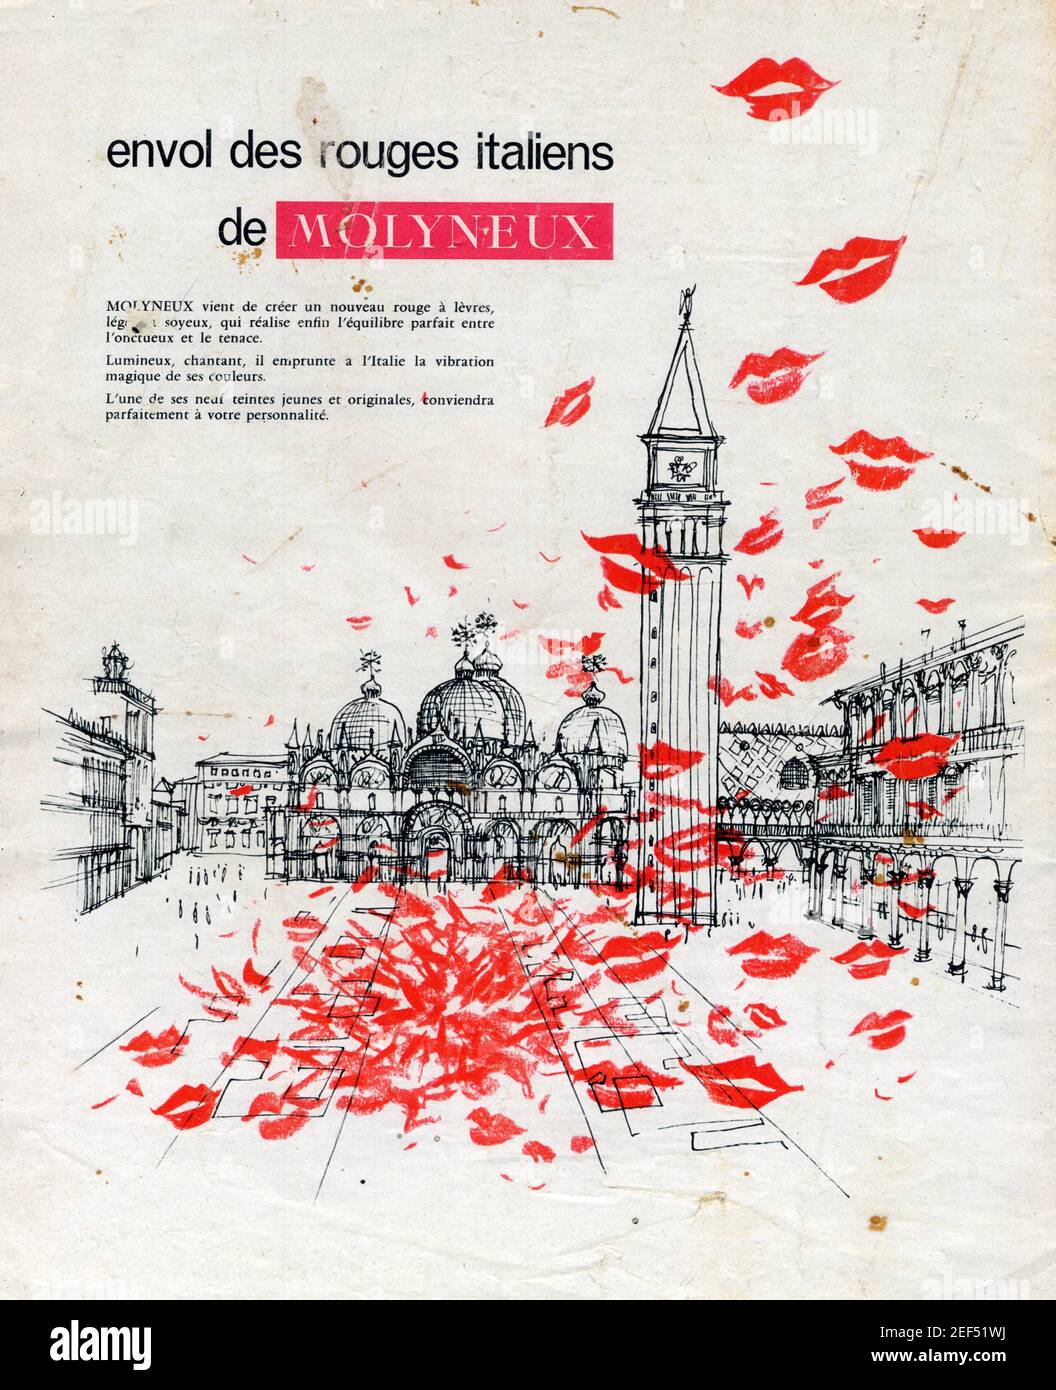 Publicité ancienne. Envol des rouges italiens de MOLYNEUX Stock Photo